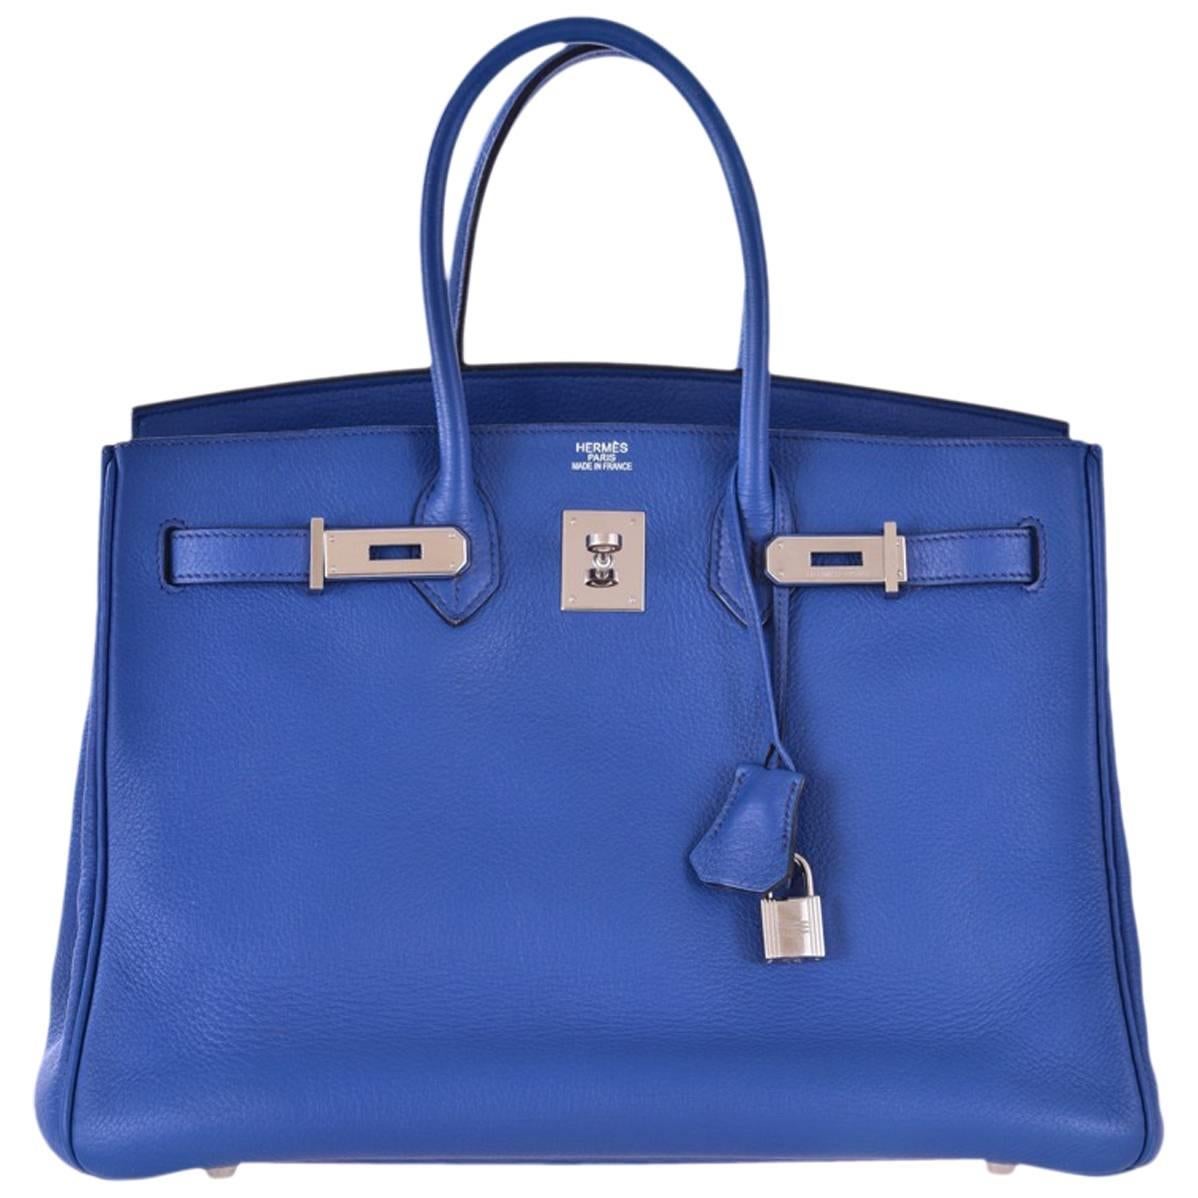 Hermes 35cm Birkin Bag Bleu Brighton Palladium hardware Togo JaneFinds